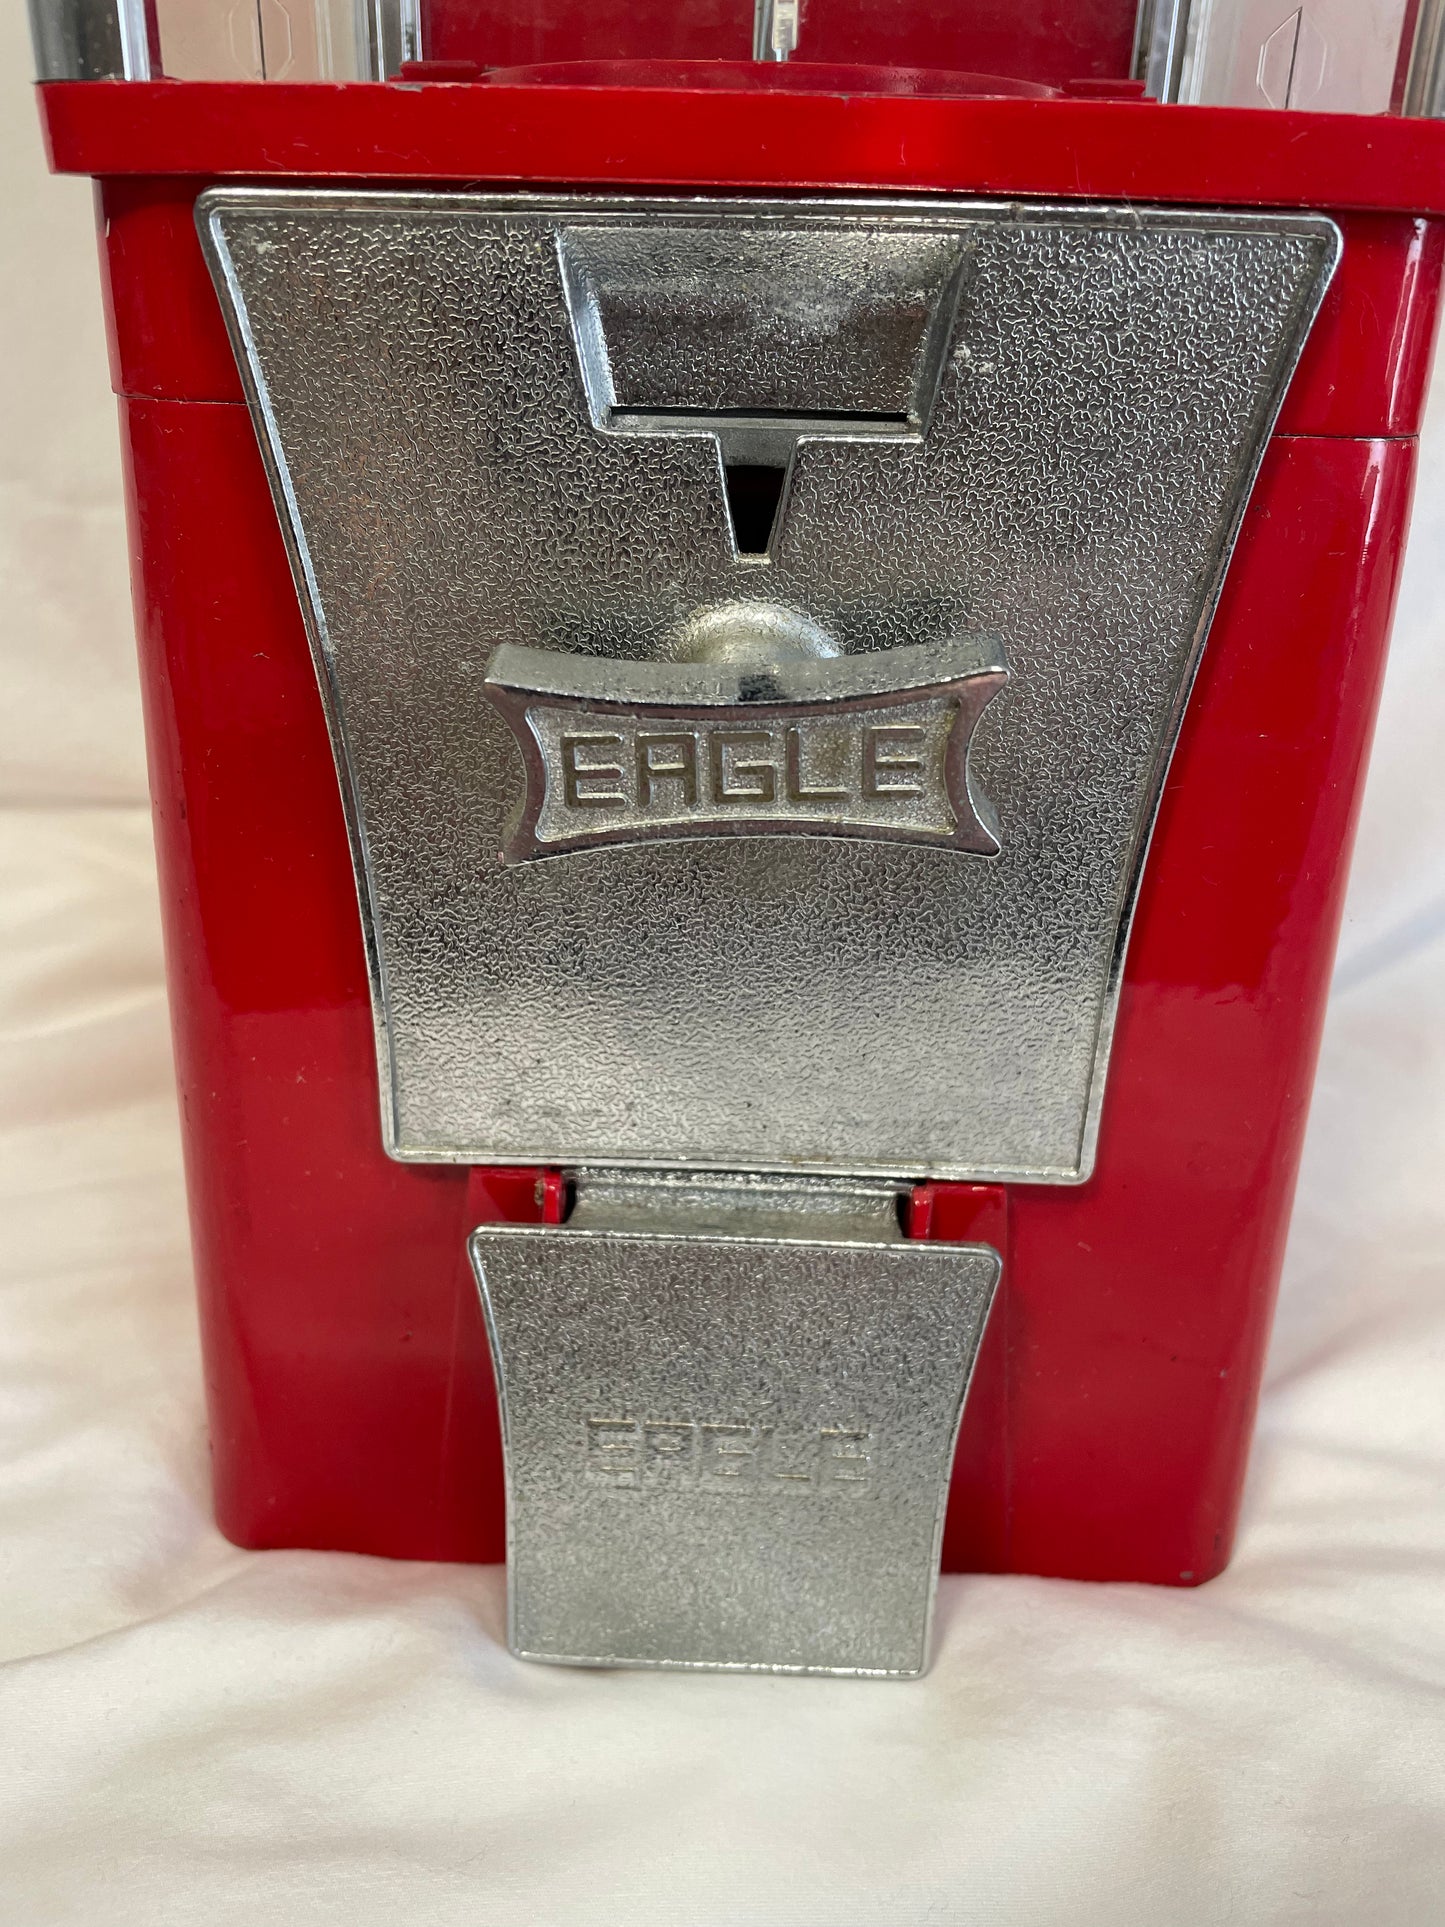 Eagle Gumball Machine - Vintage